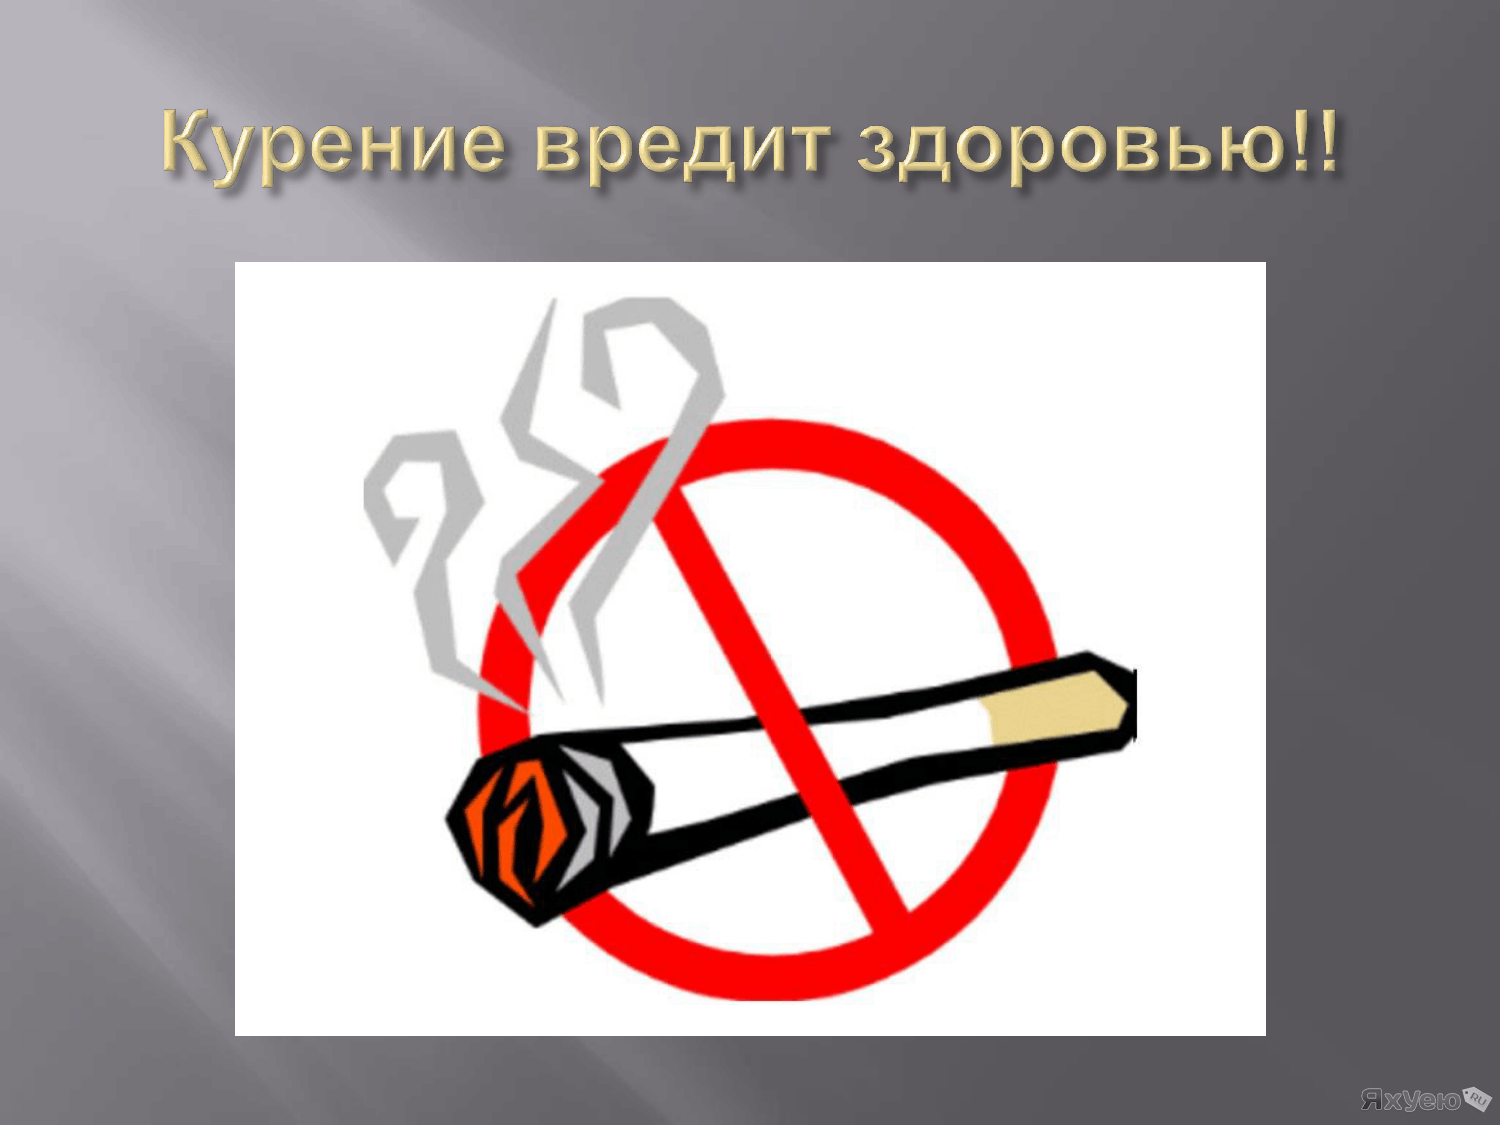 Способно нанести вред здоровью. Курение вредит здоровью. Курить здоровью вредить. Парение вредит здоровью. Курить вредно для здоровья.